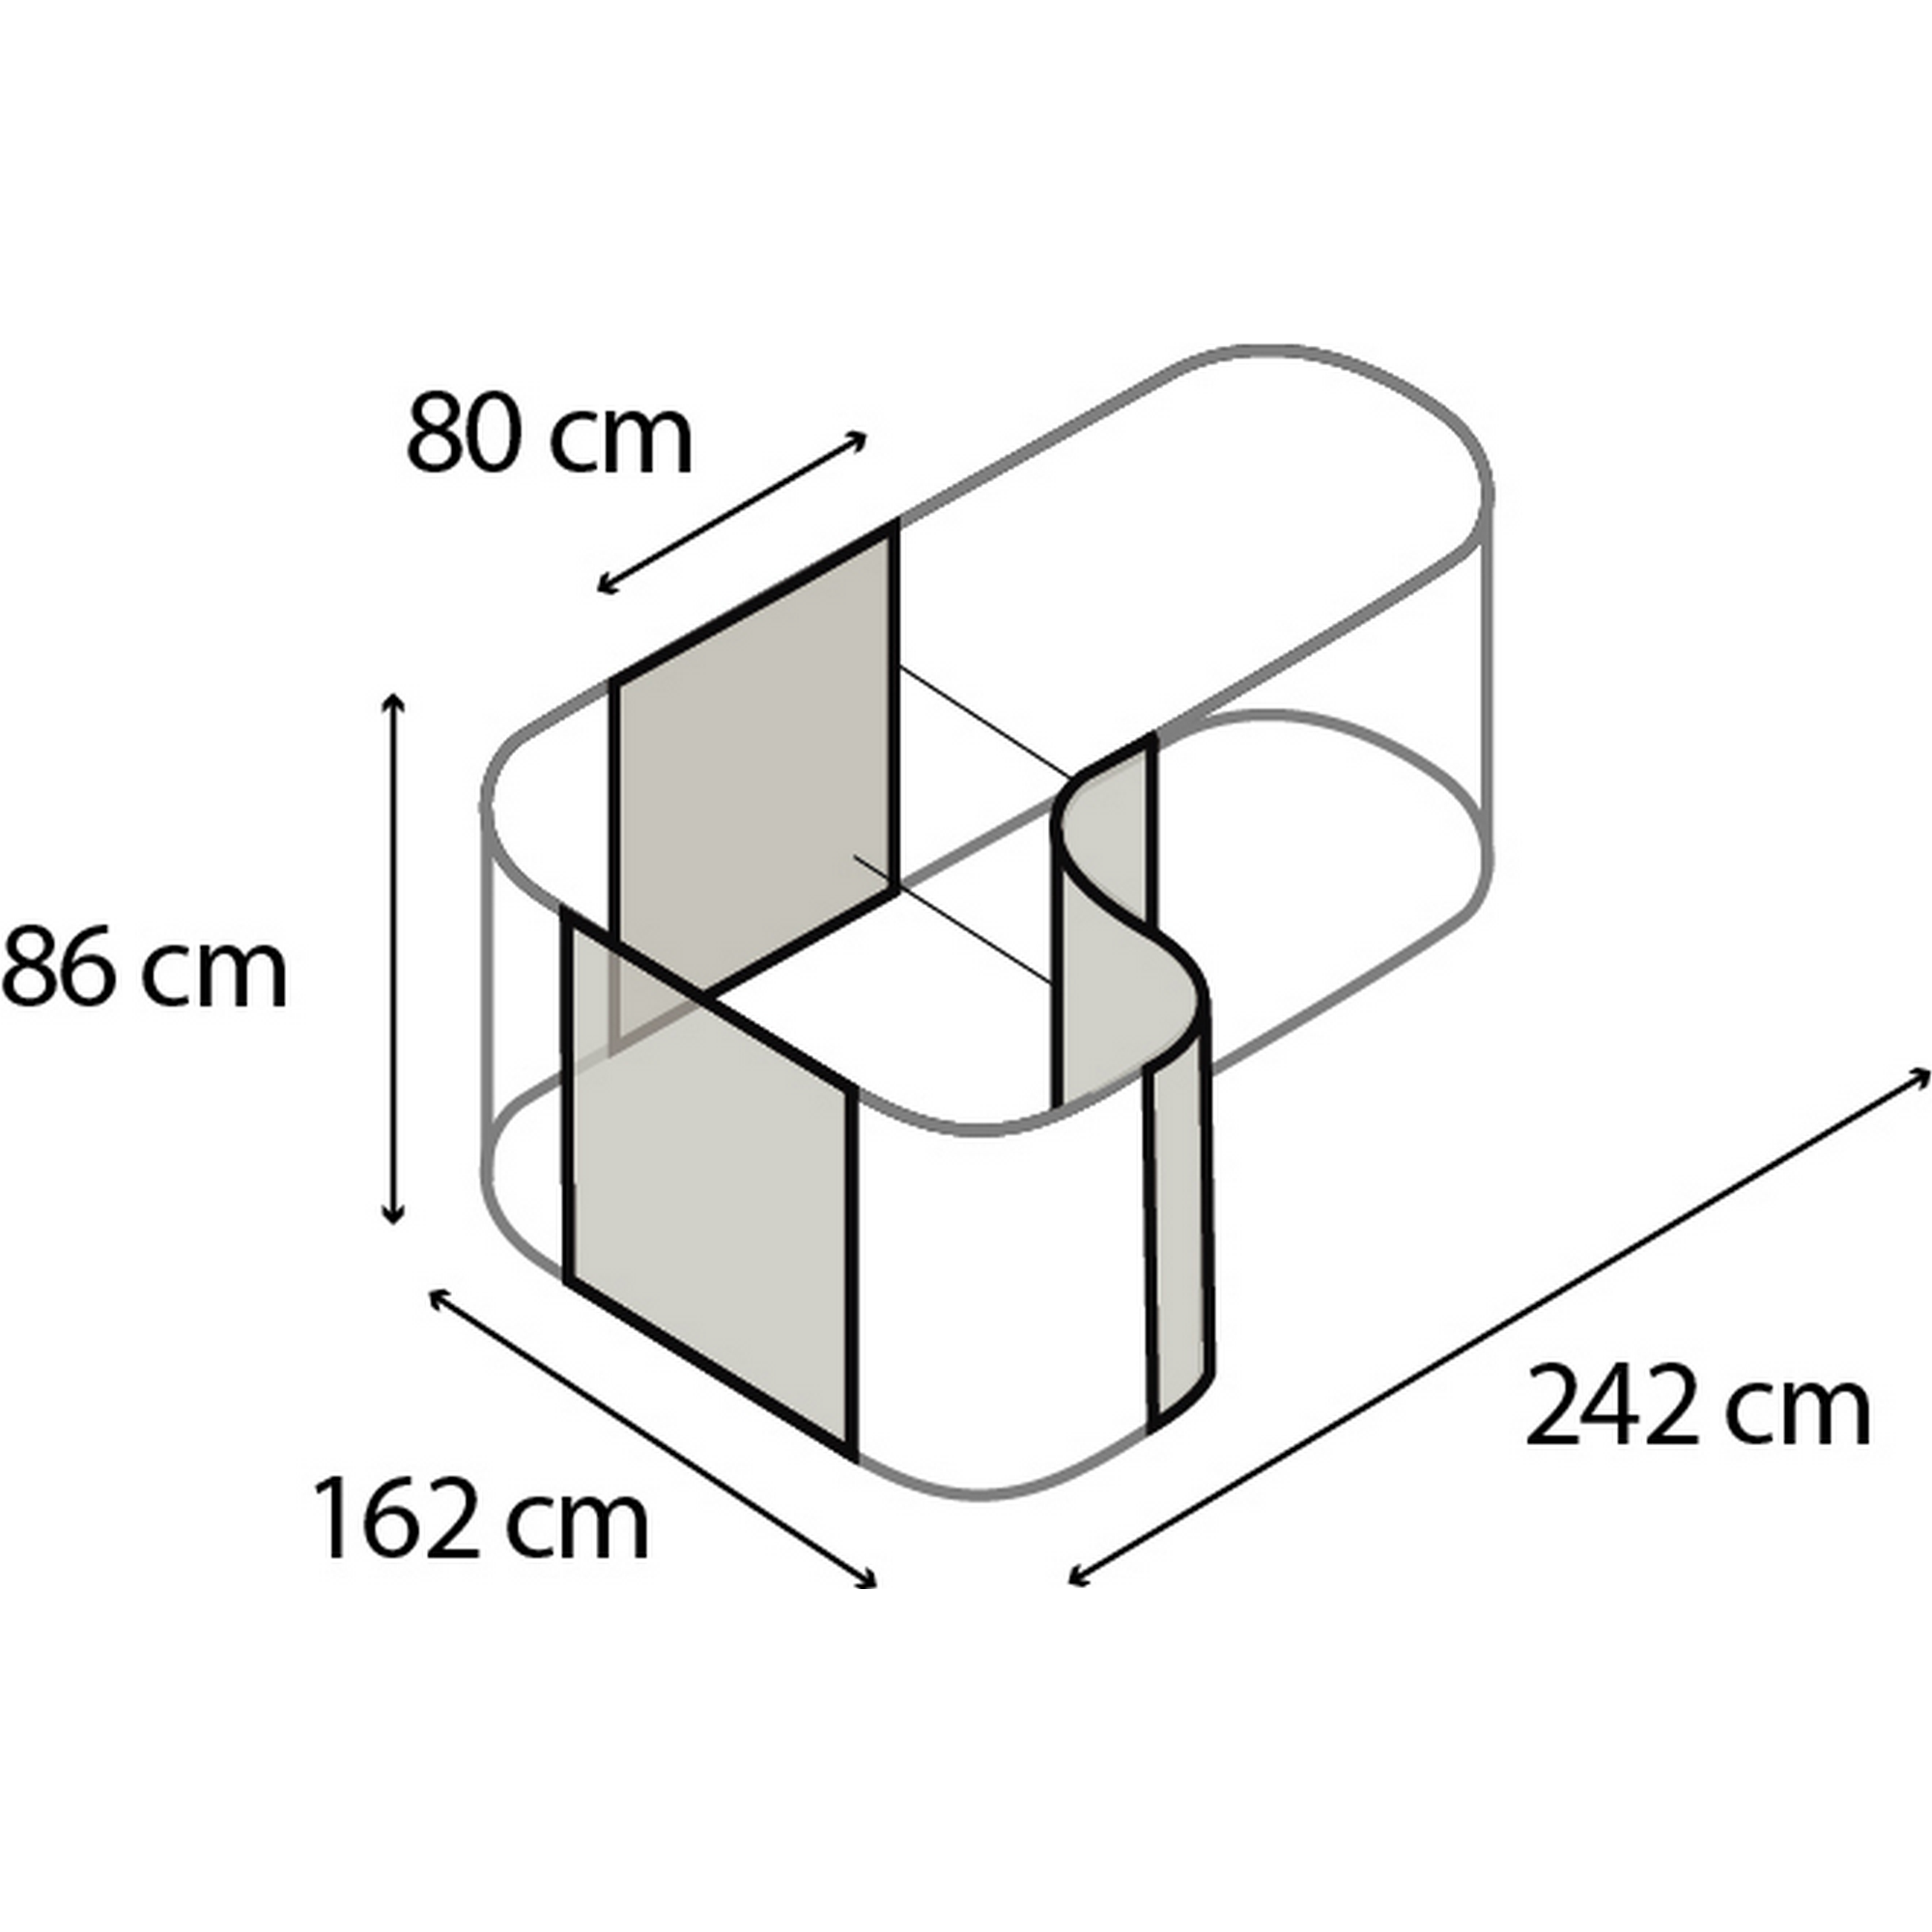 Hochbeet-Erweiterung 'Vita 858 Curve' 80 x 86 cm ziegelrot + product picture